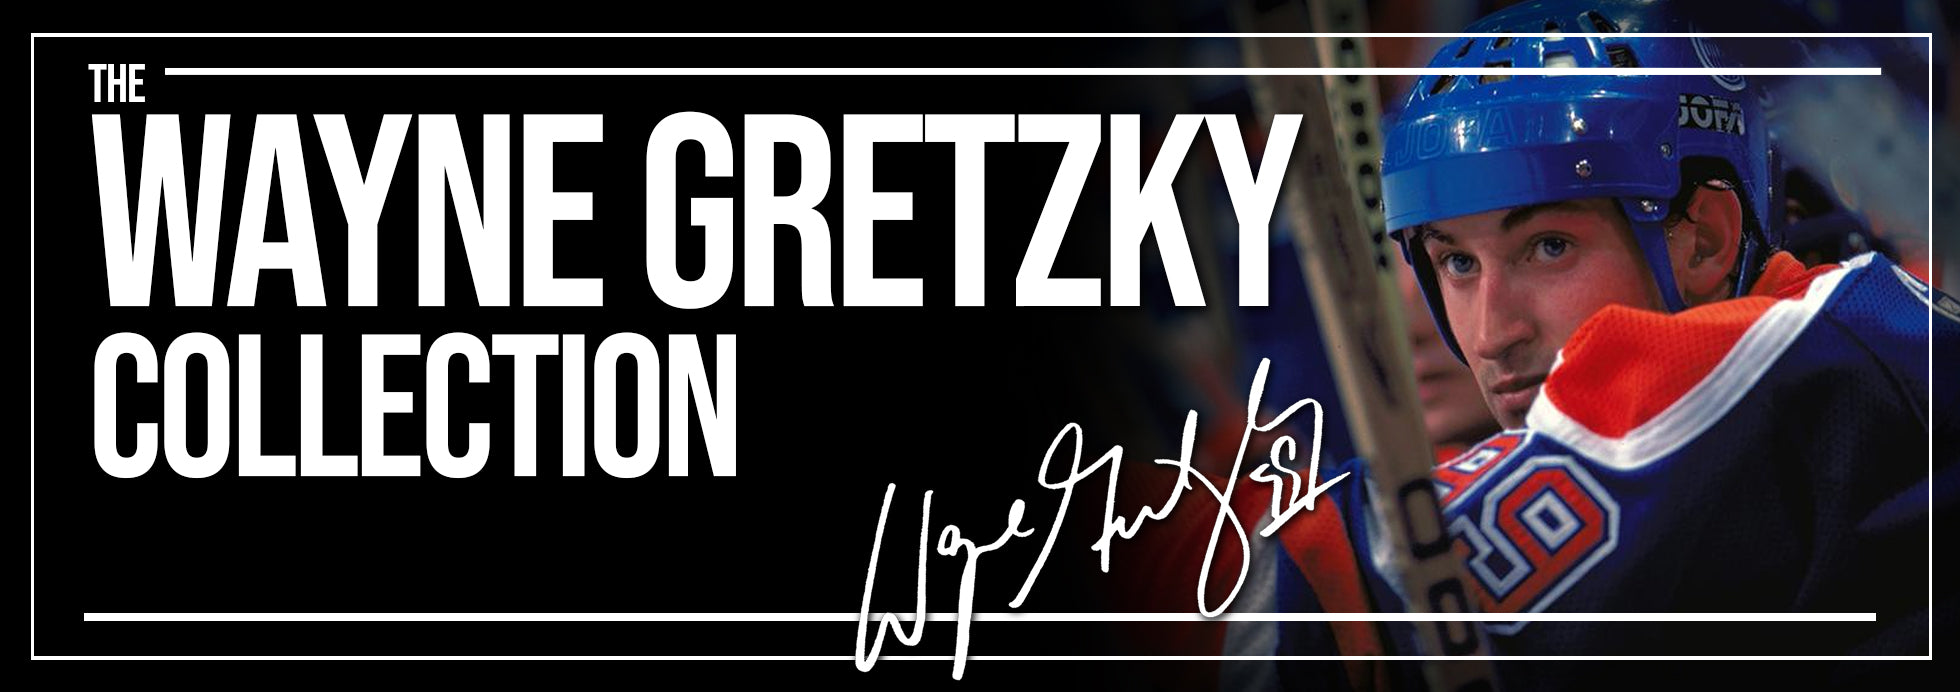 Bannière de la collection Wayne Gretzky